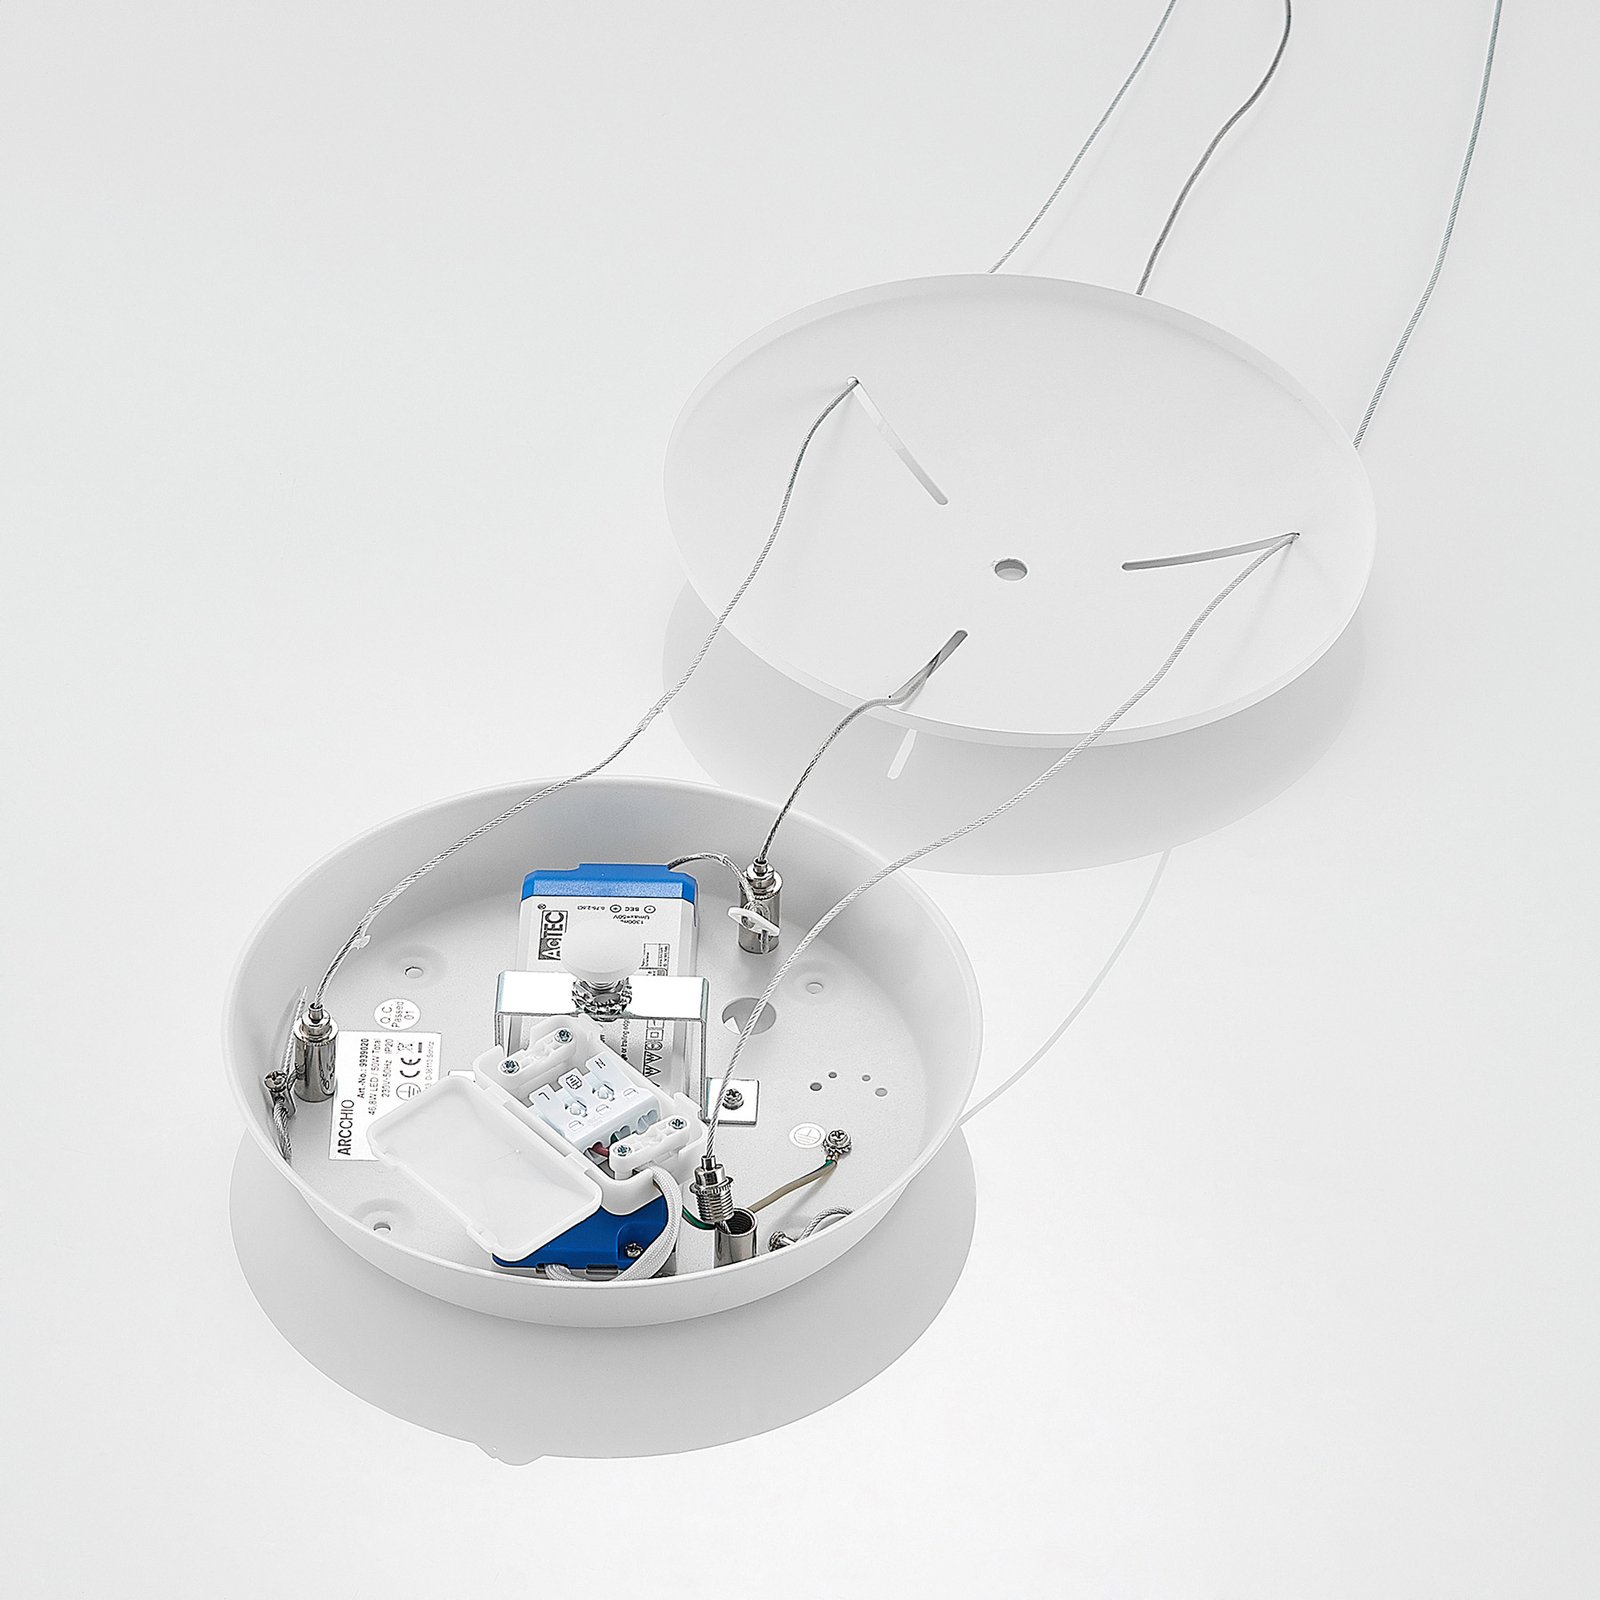 Arcchio Vivy LED-hængelampe, hvid, 58 cm